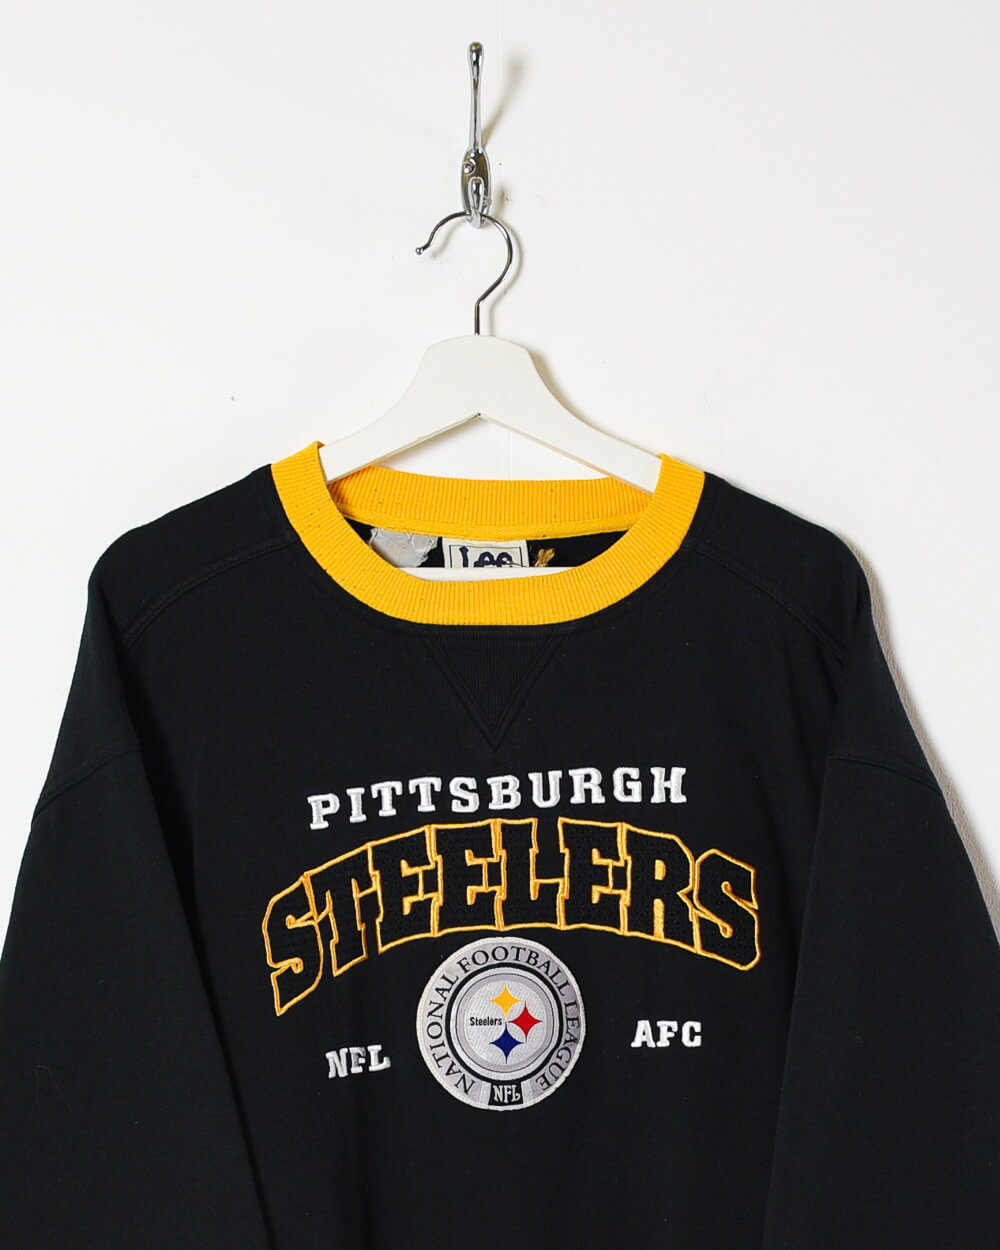 Black Lee Pittsburgh Steelers NFL Sweatshirt - X-Large